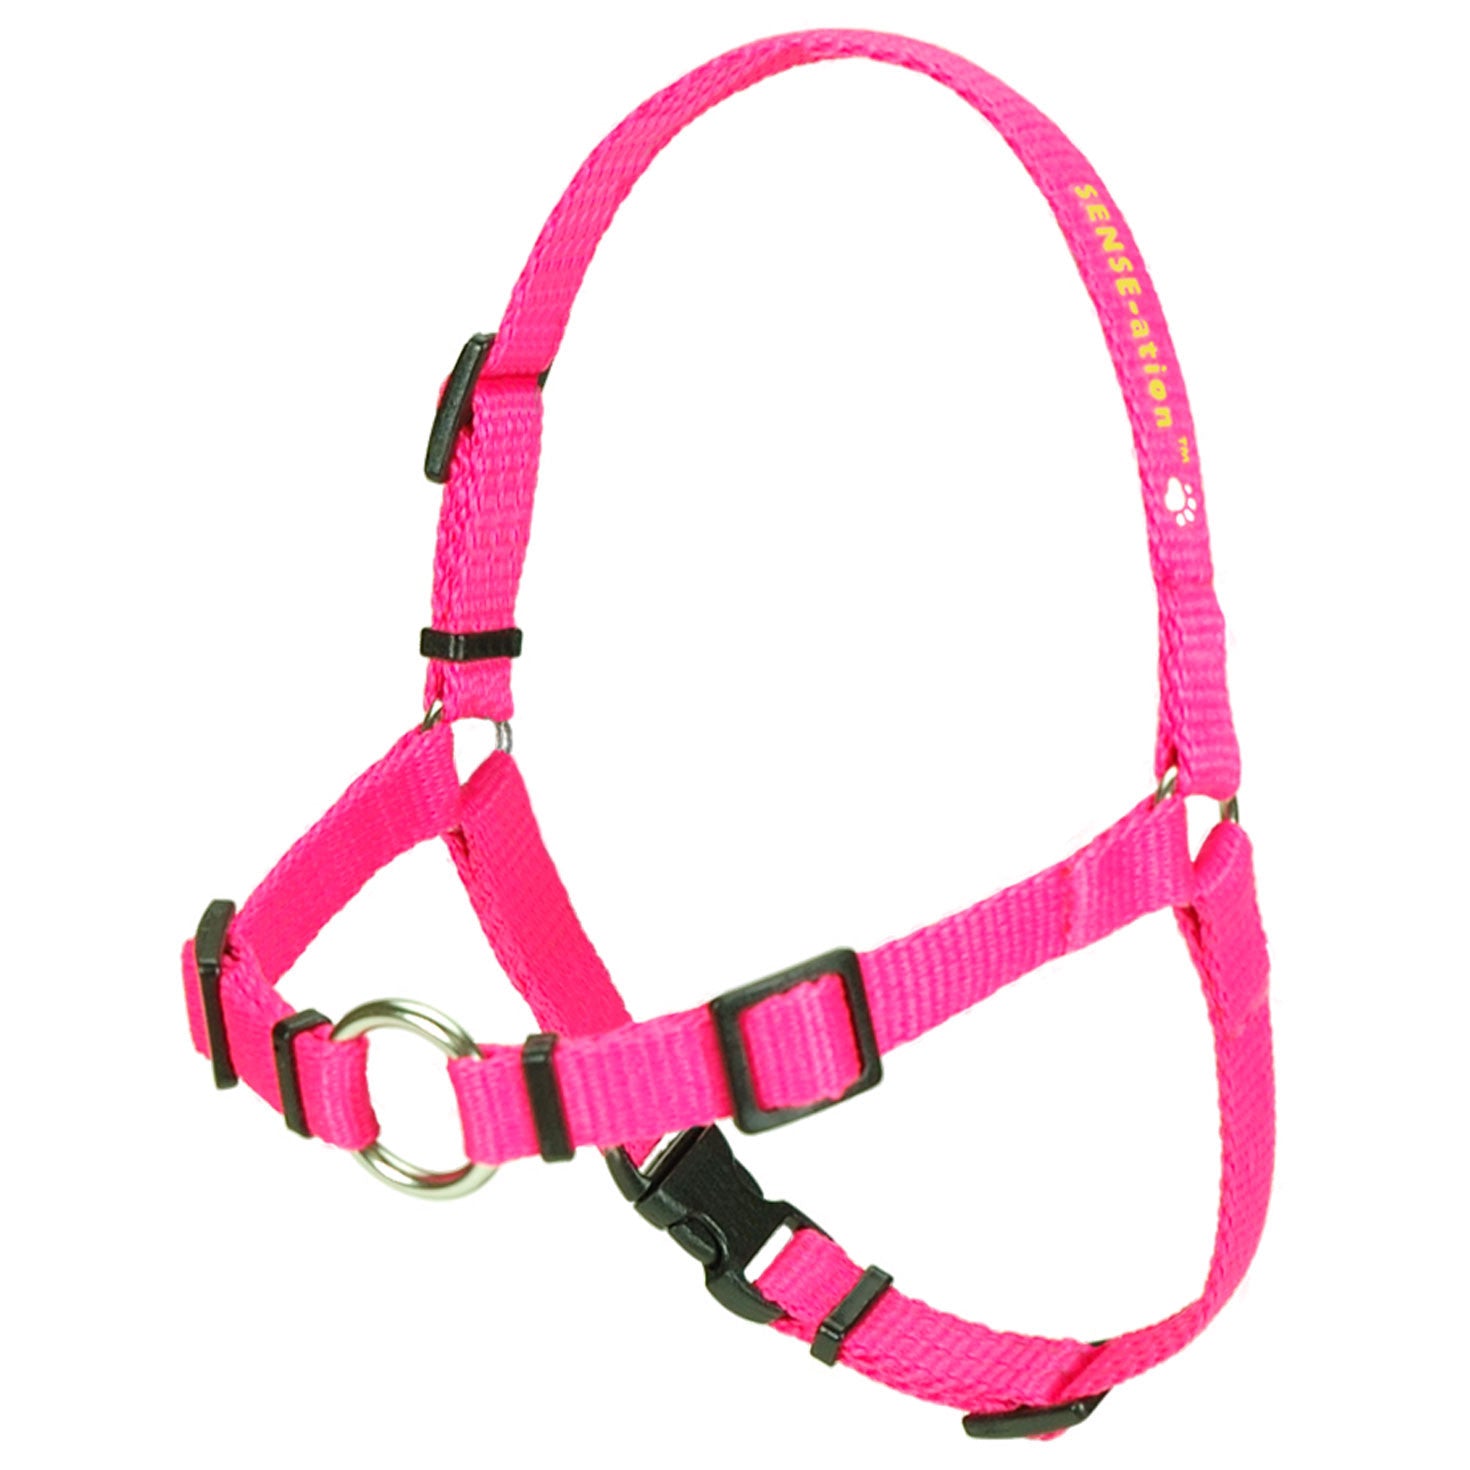 SENSE-ation Dog Harness - Pink